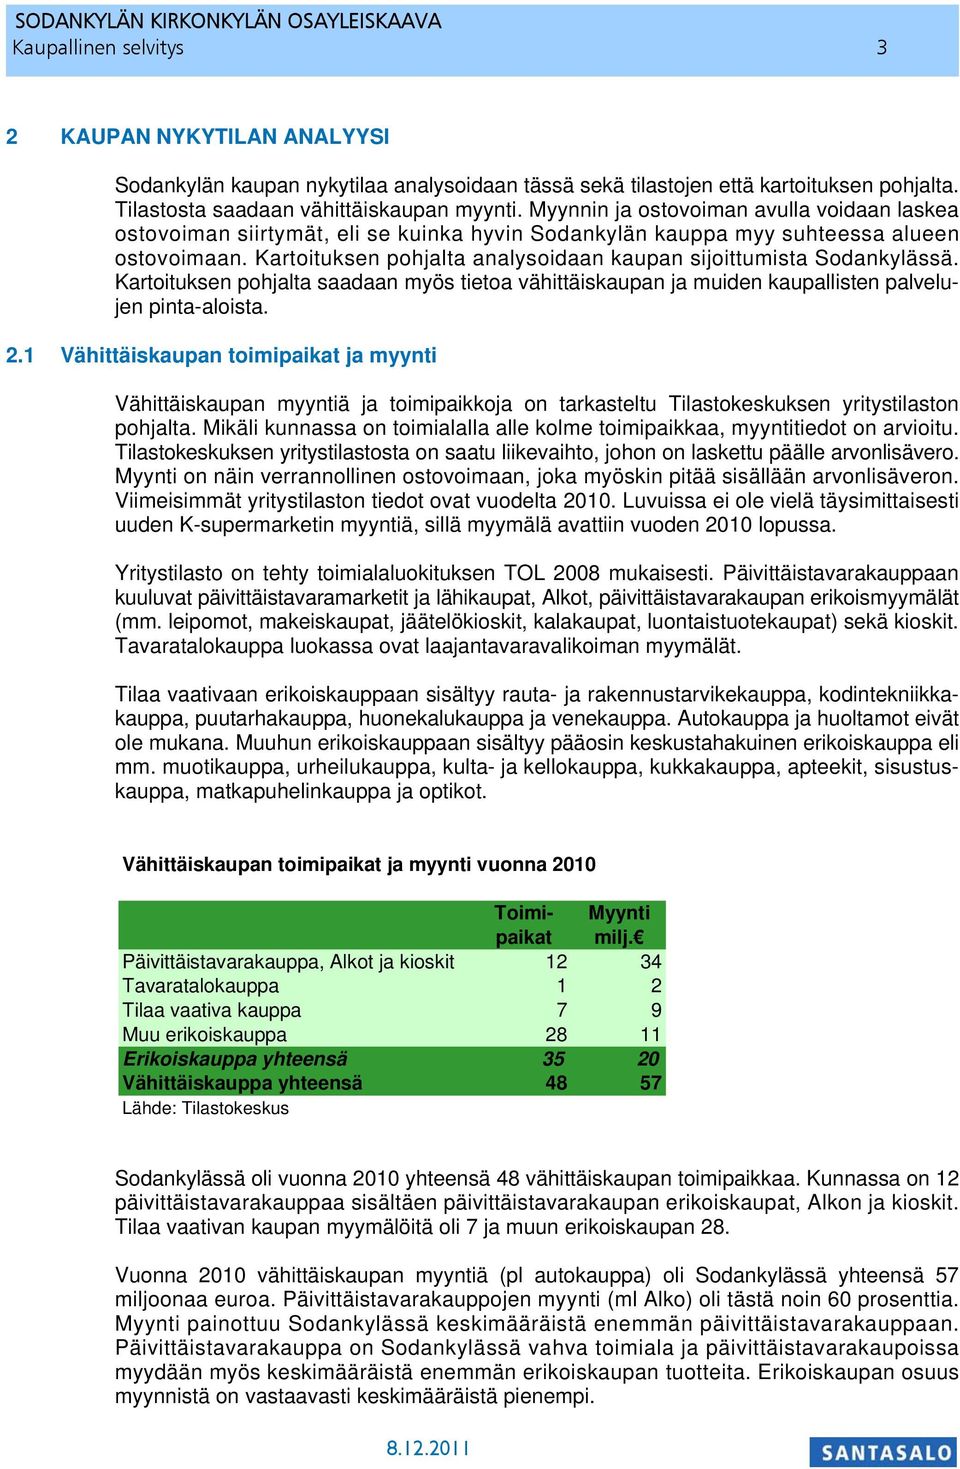 Kartoituksen pohjalta analysoidaan kaupan sijoittumista Sodankylässä. Kartoituksen pohjalta saadaan myös tietoa vähittäiskaupan ja muiden kaupallisten palvelujen pinta-aloista. 2.